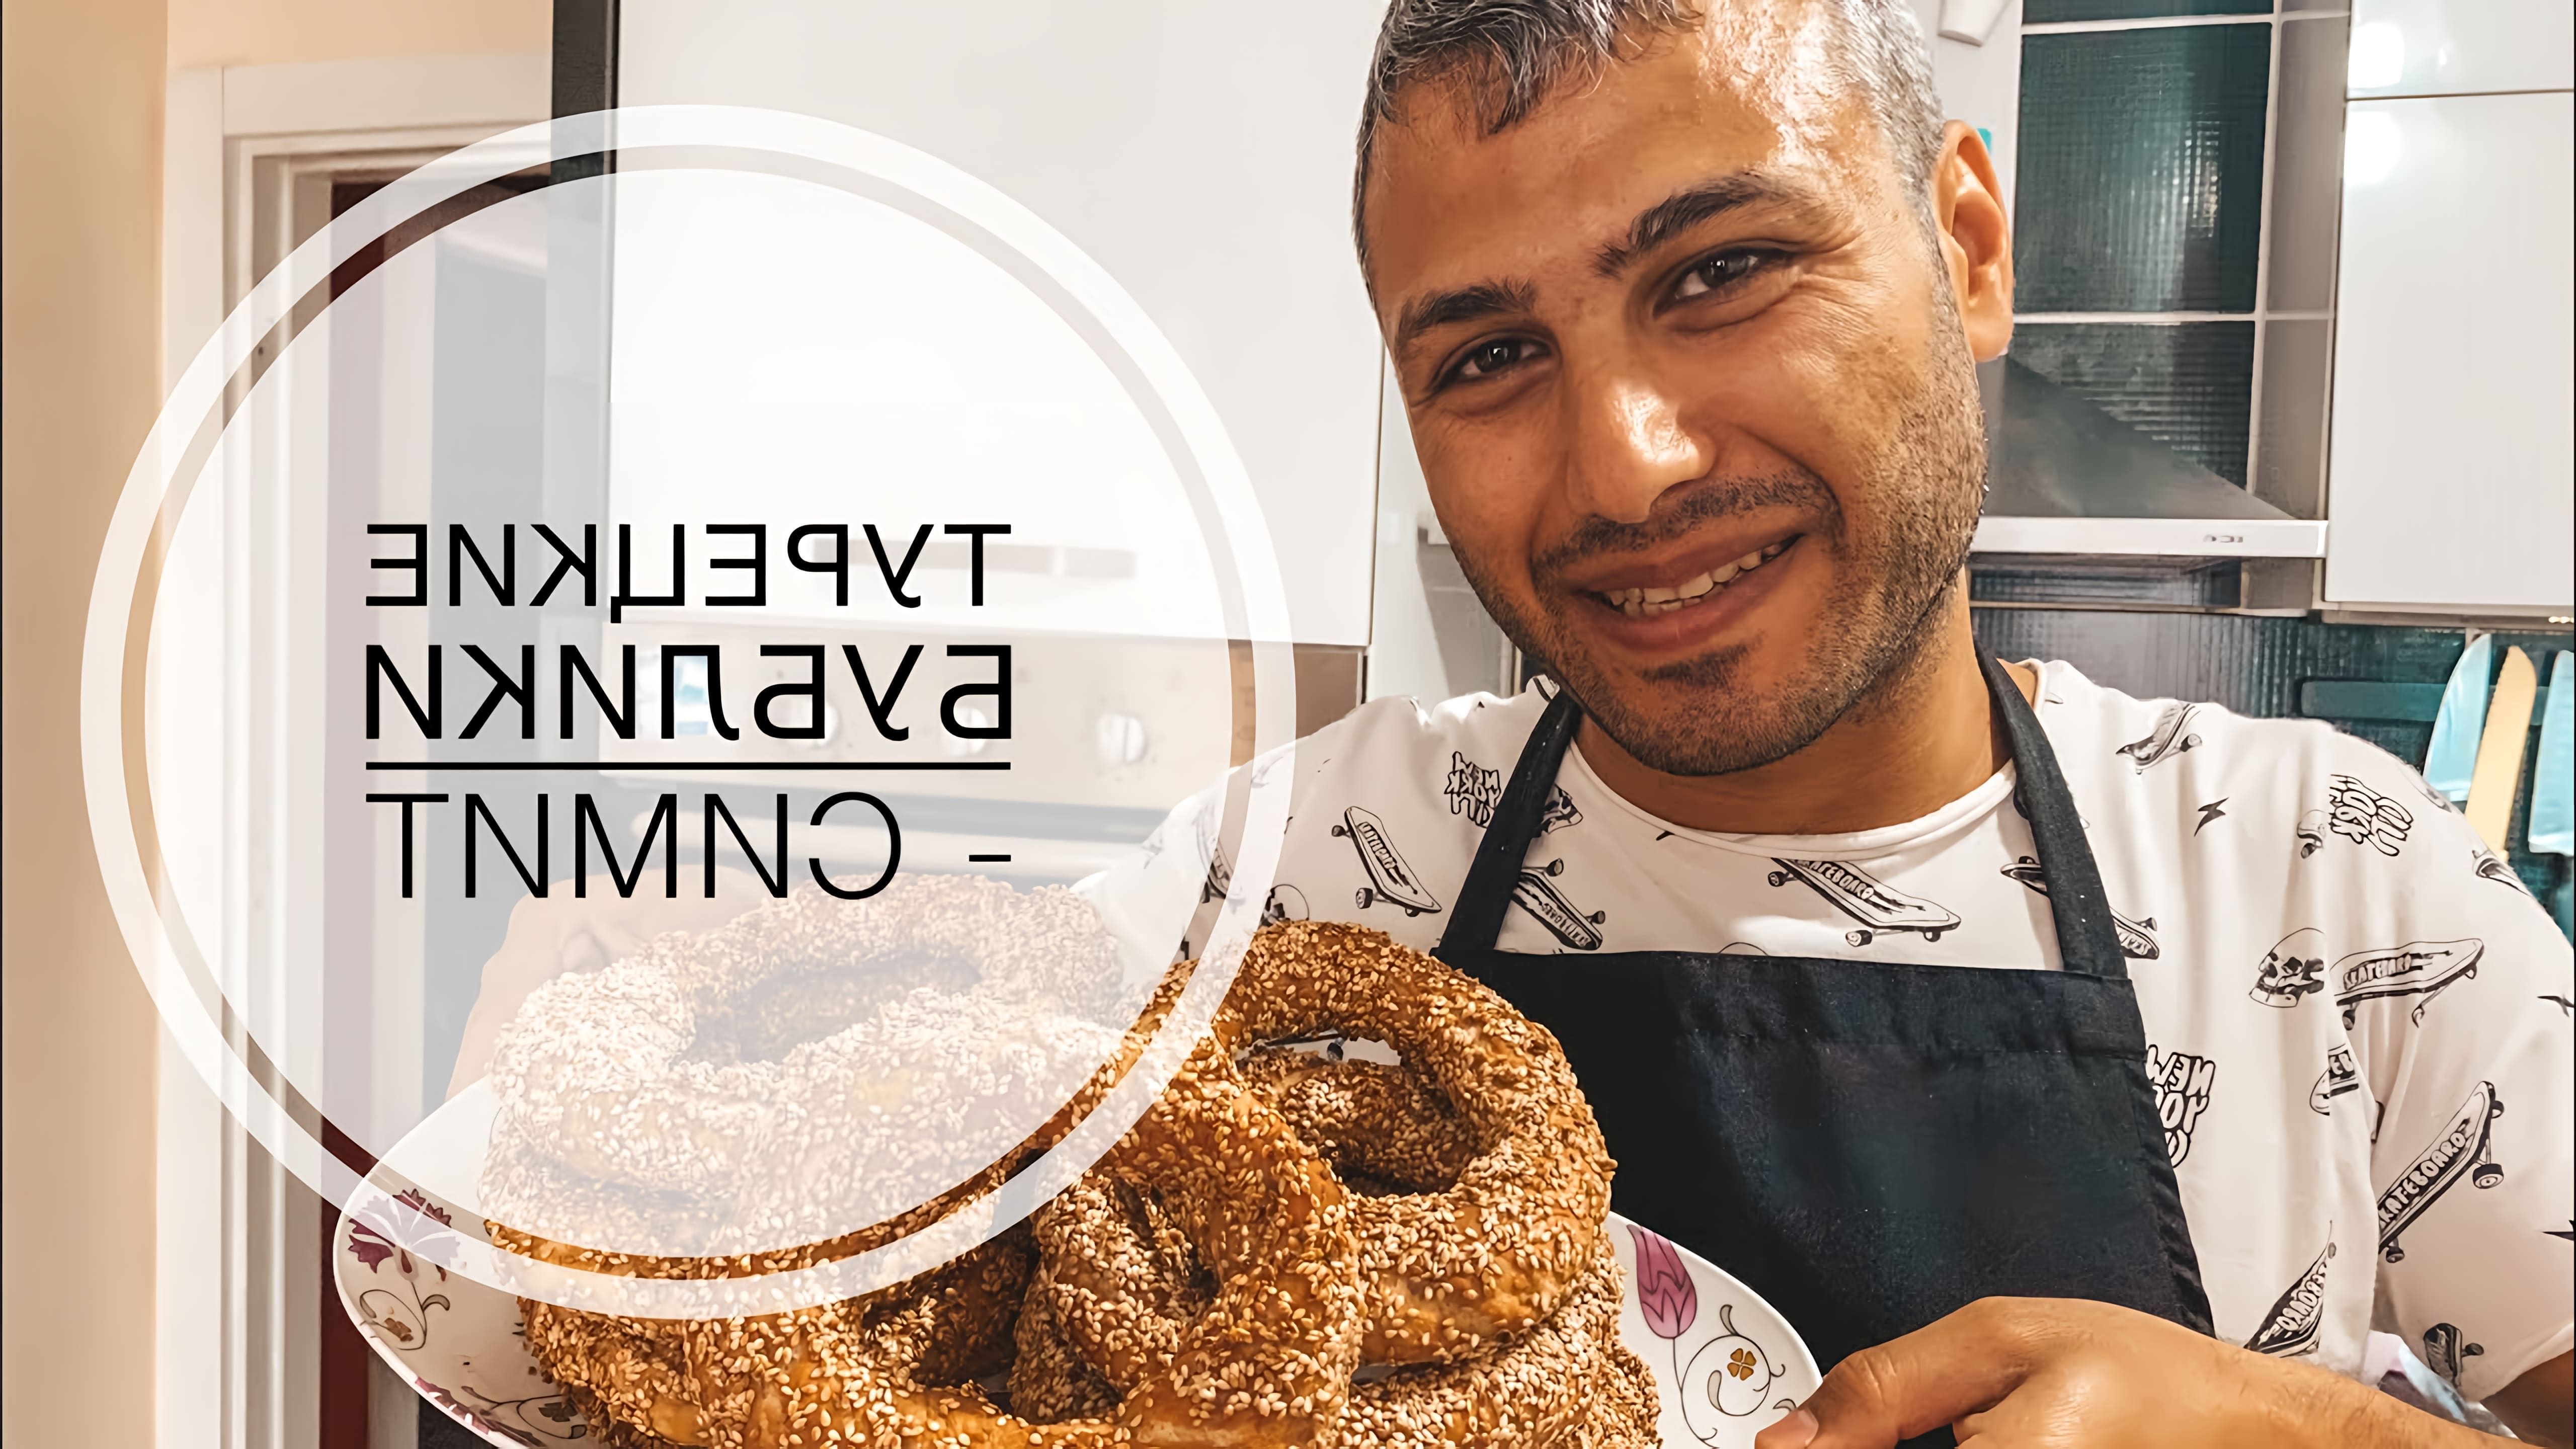 В этом видео турецкий мужчина готовит симит - турецкие бублики